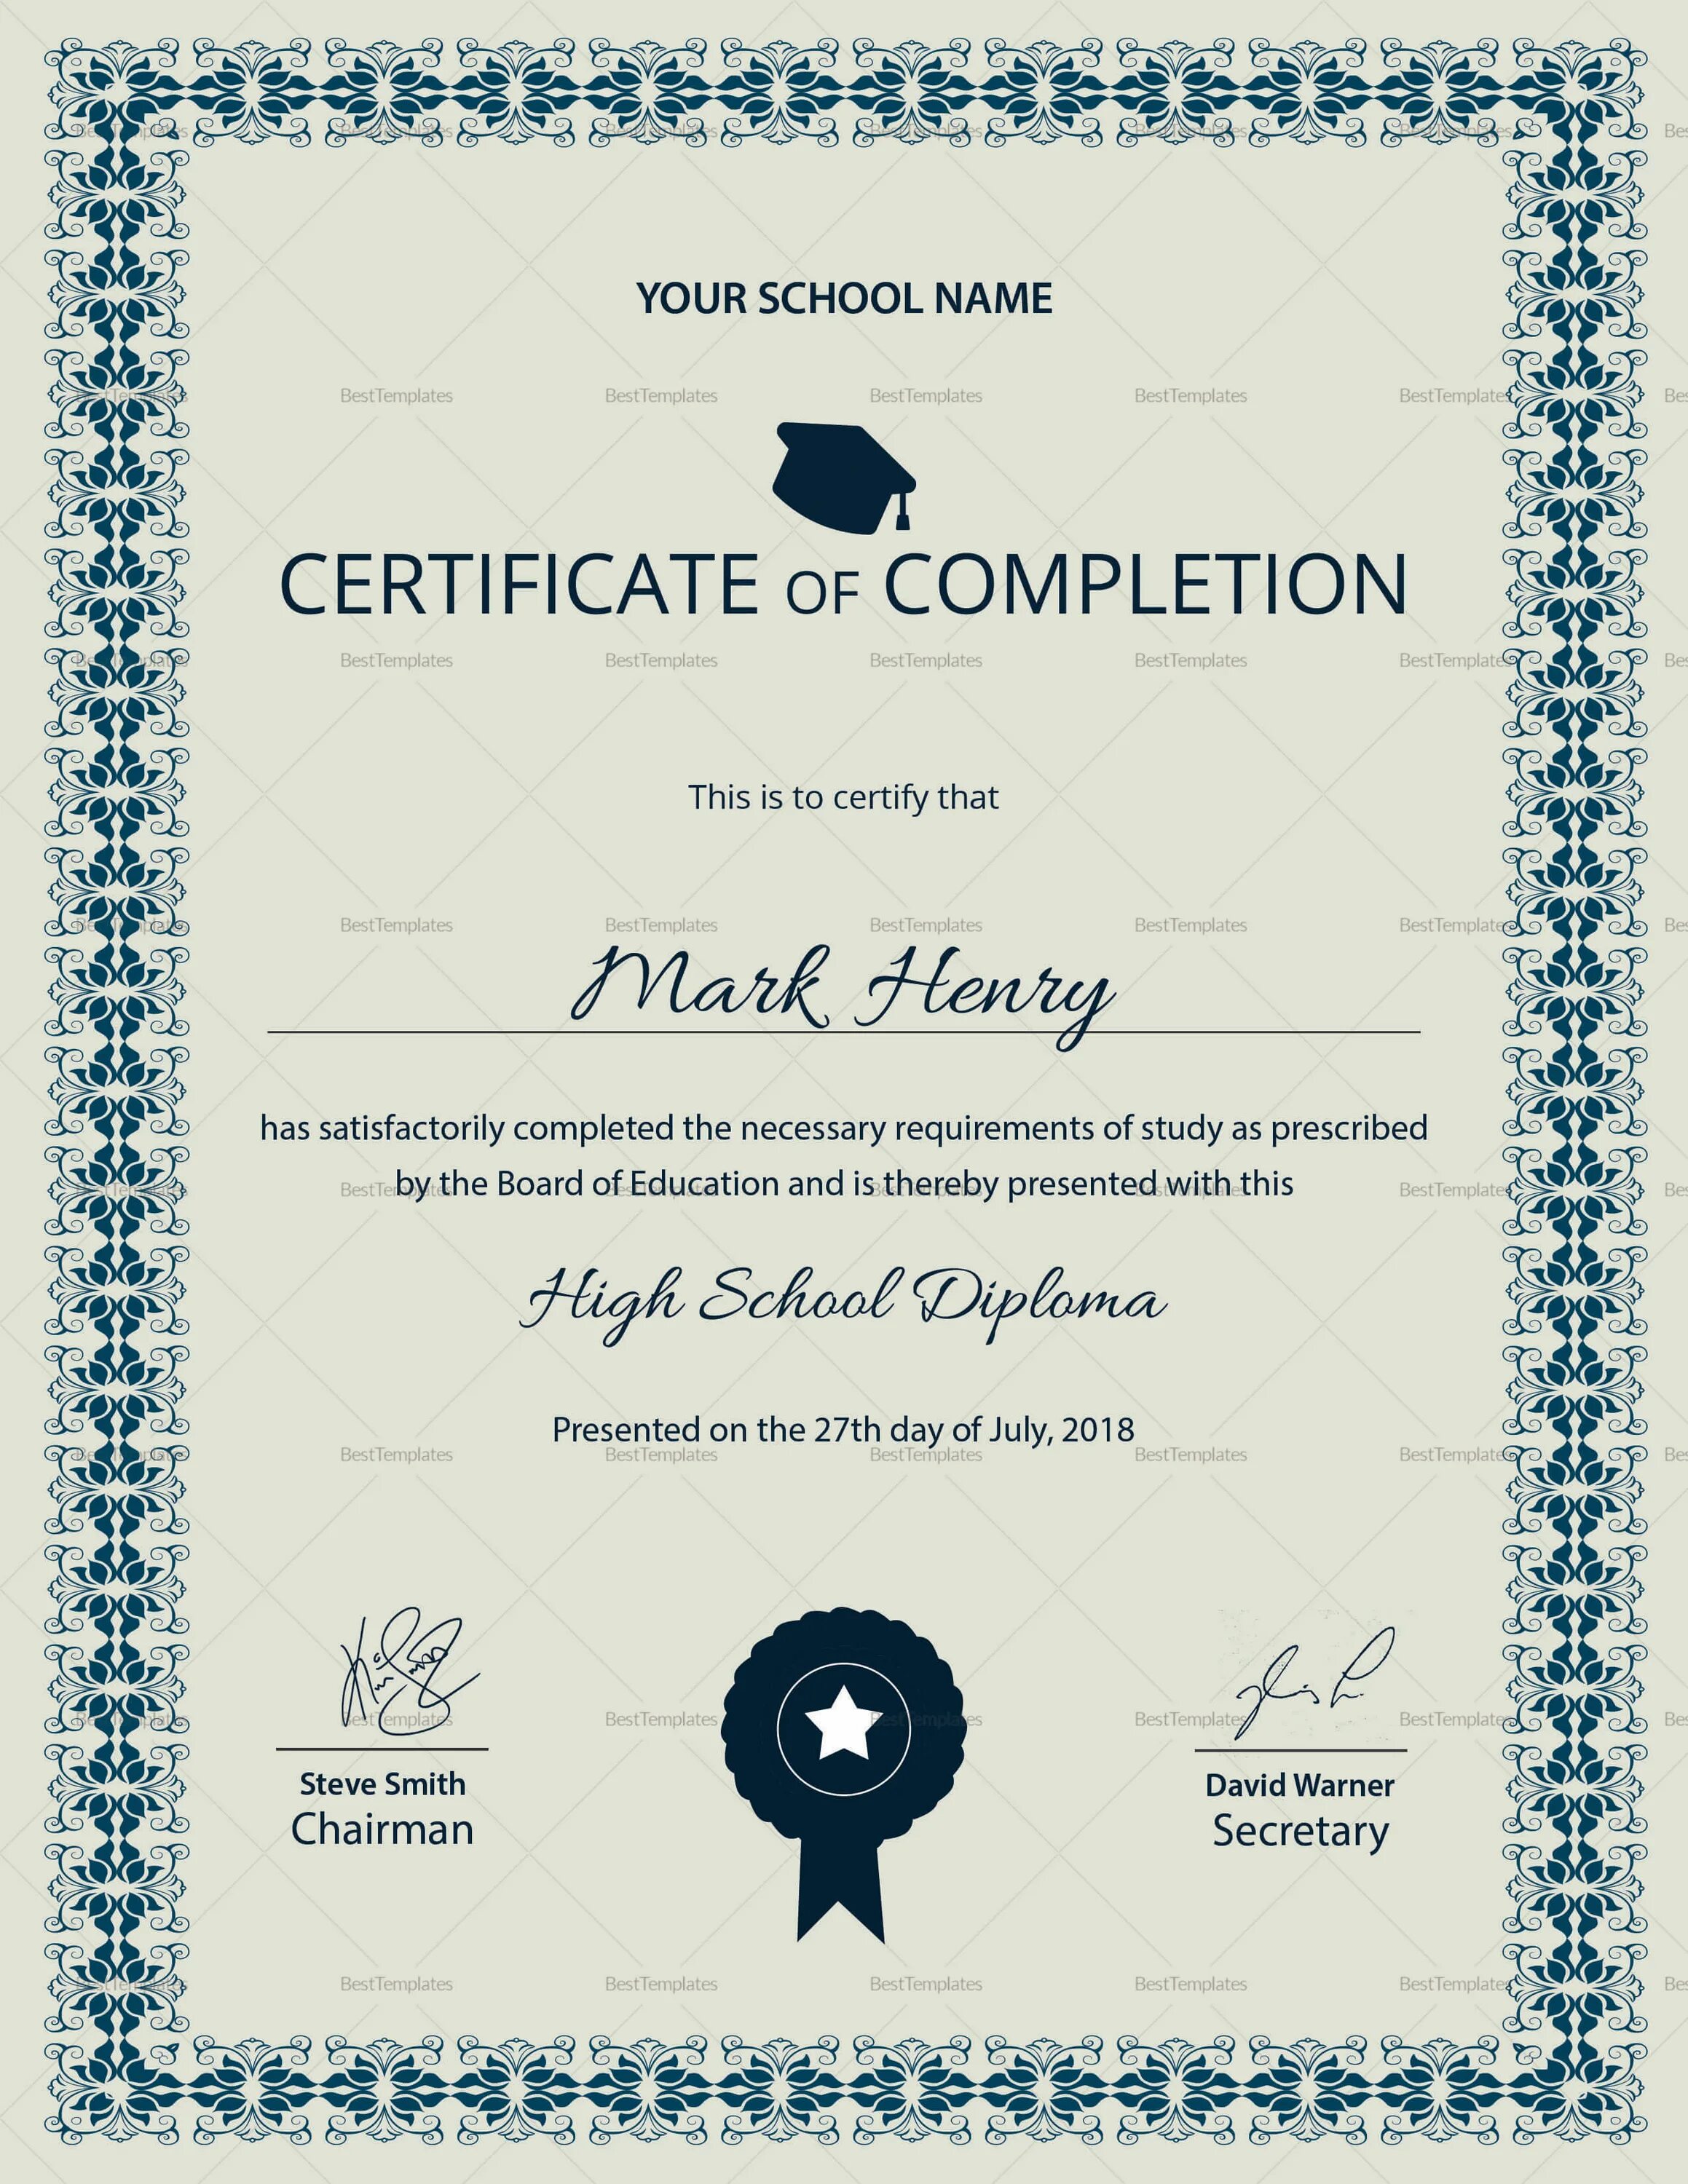 High School Certificate. High Scool Certificate. High School Diploma. Certificate of completion Template. Diploma.